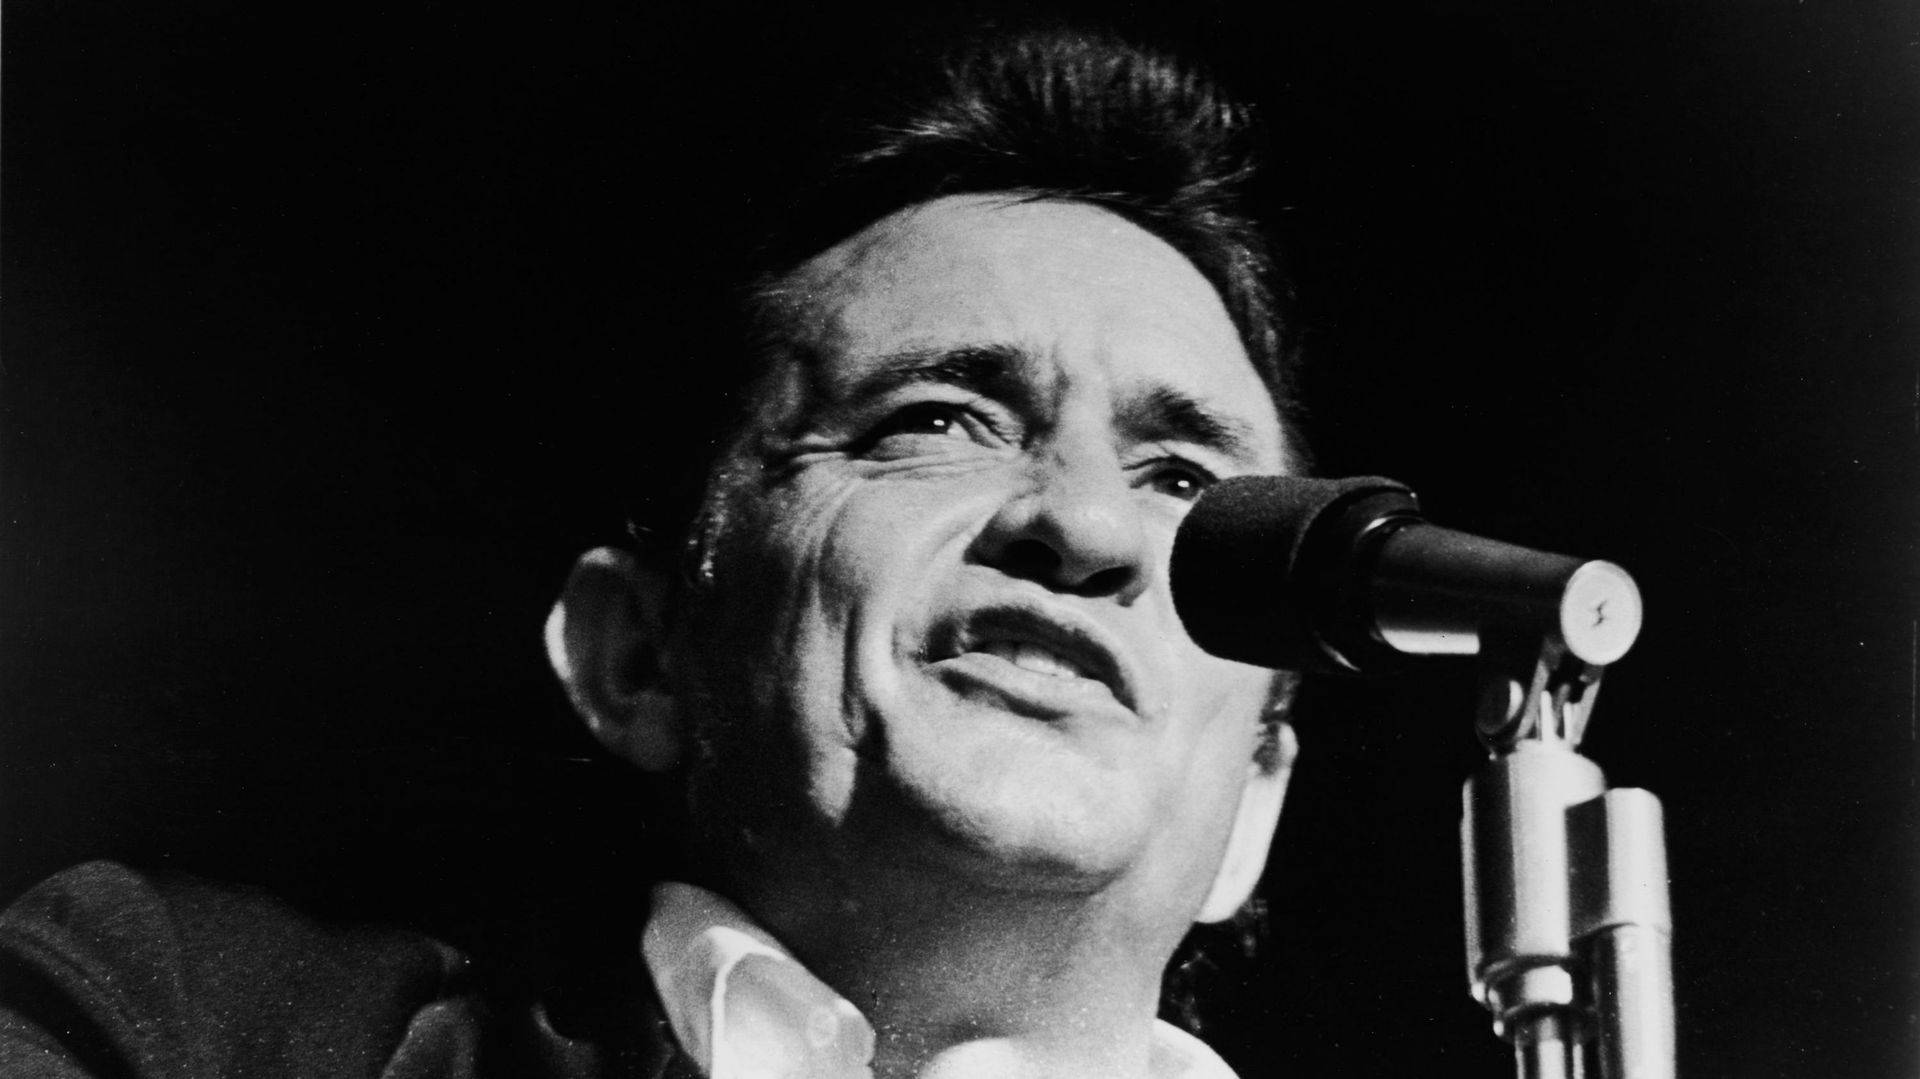 Plus d’infos sur l’inédit live de Johnny Cash